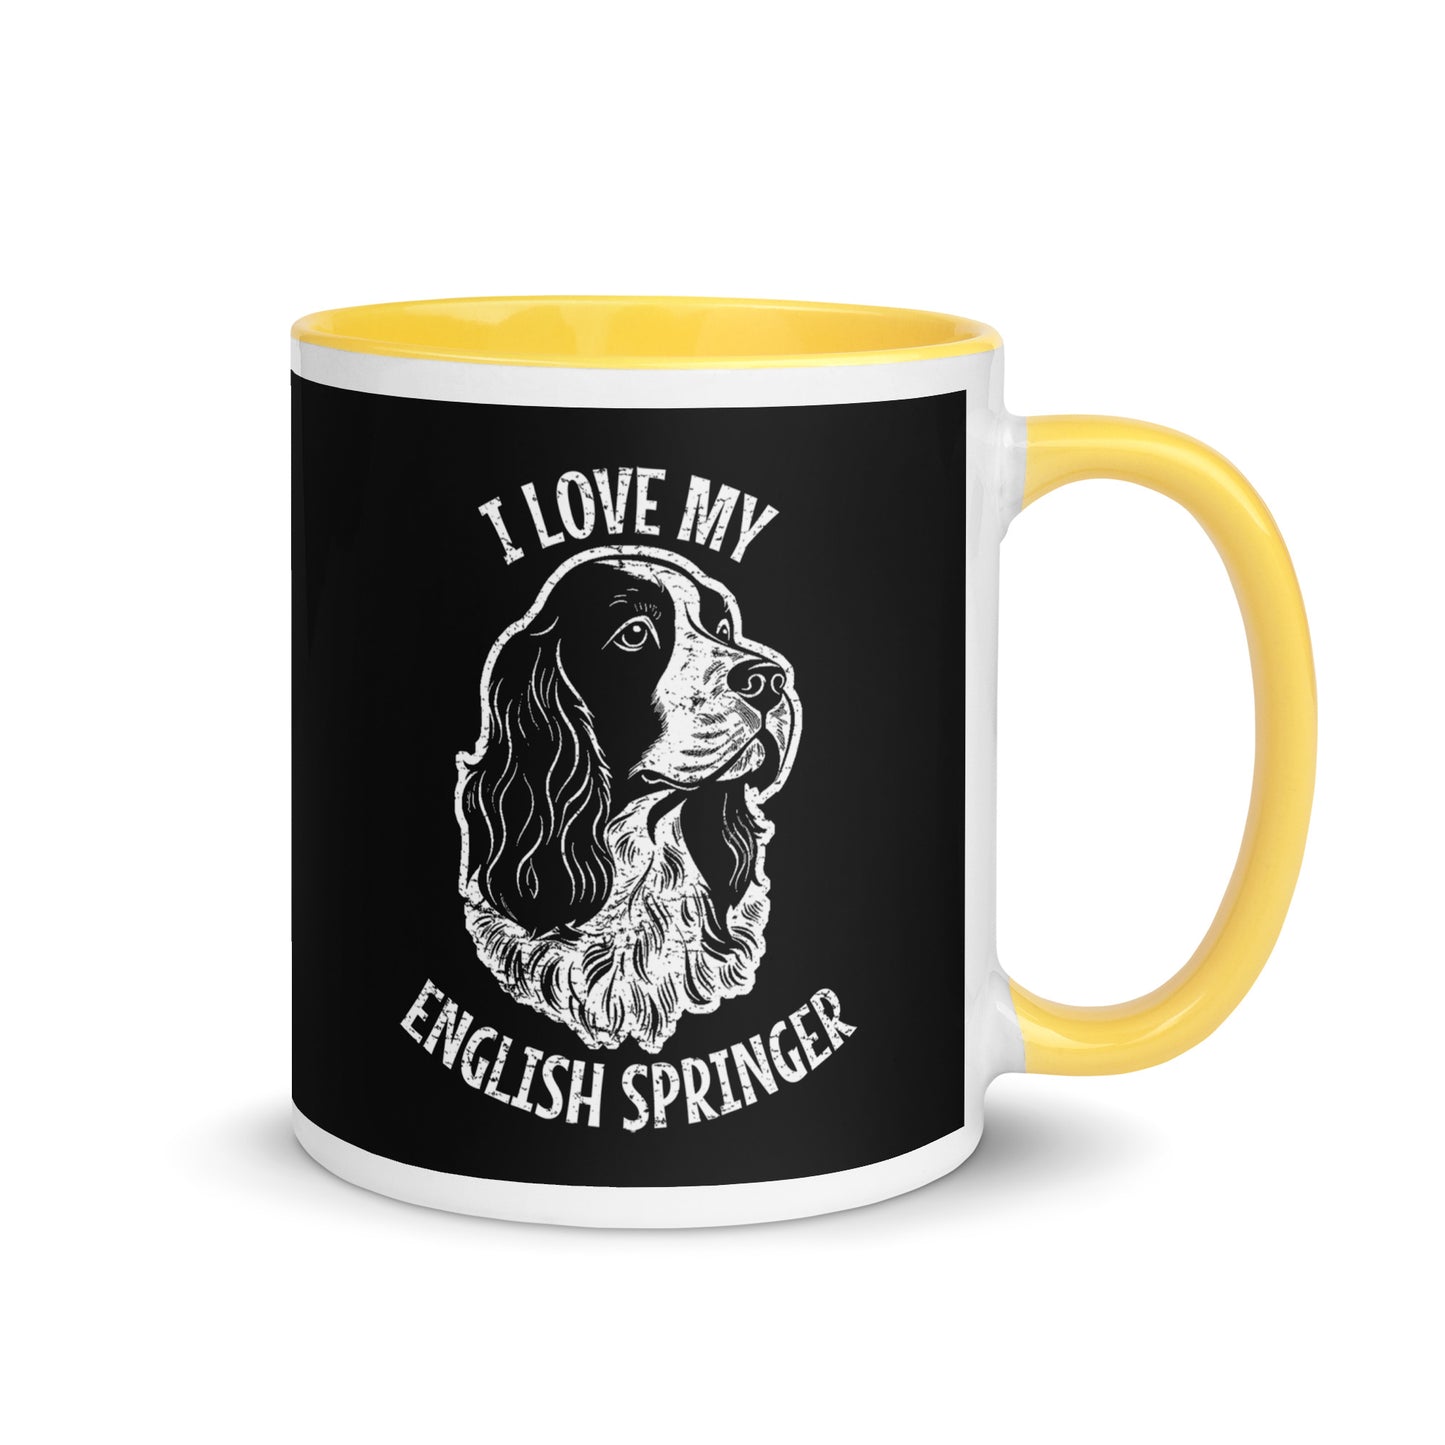 English Springer Spaniel Mug, English Springer Spaniel gift, gift for dog mom, custom dog gift, dog owner gift, pet memorial gift